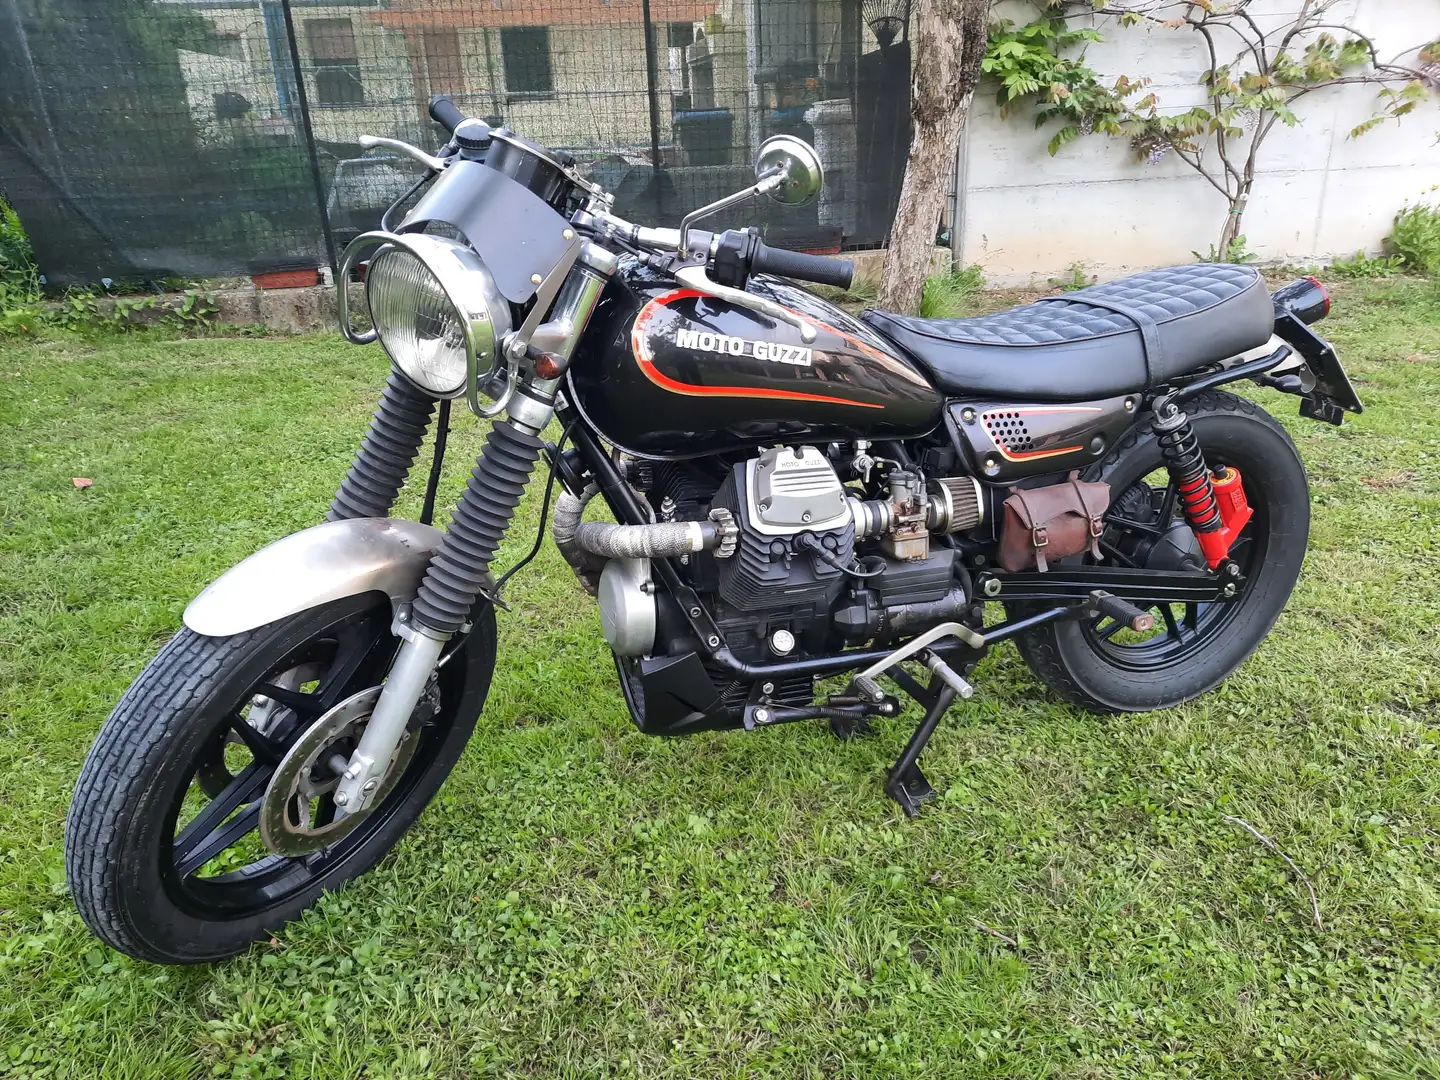 Moto Guzzi V 65 Black - 1